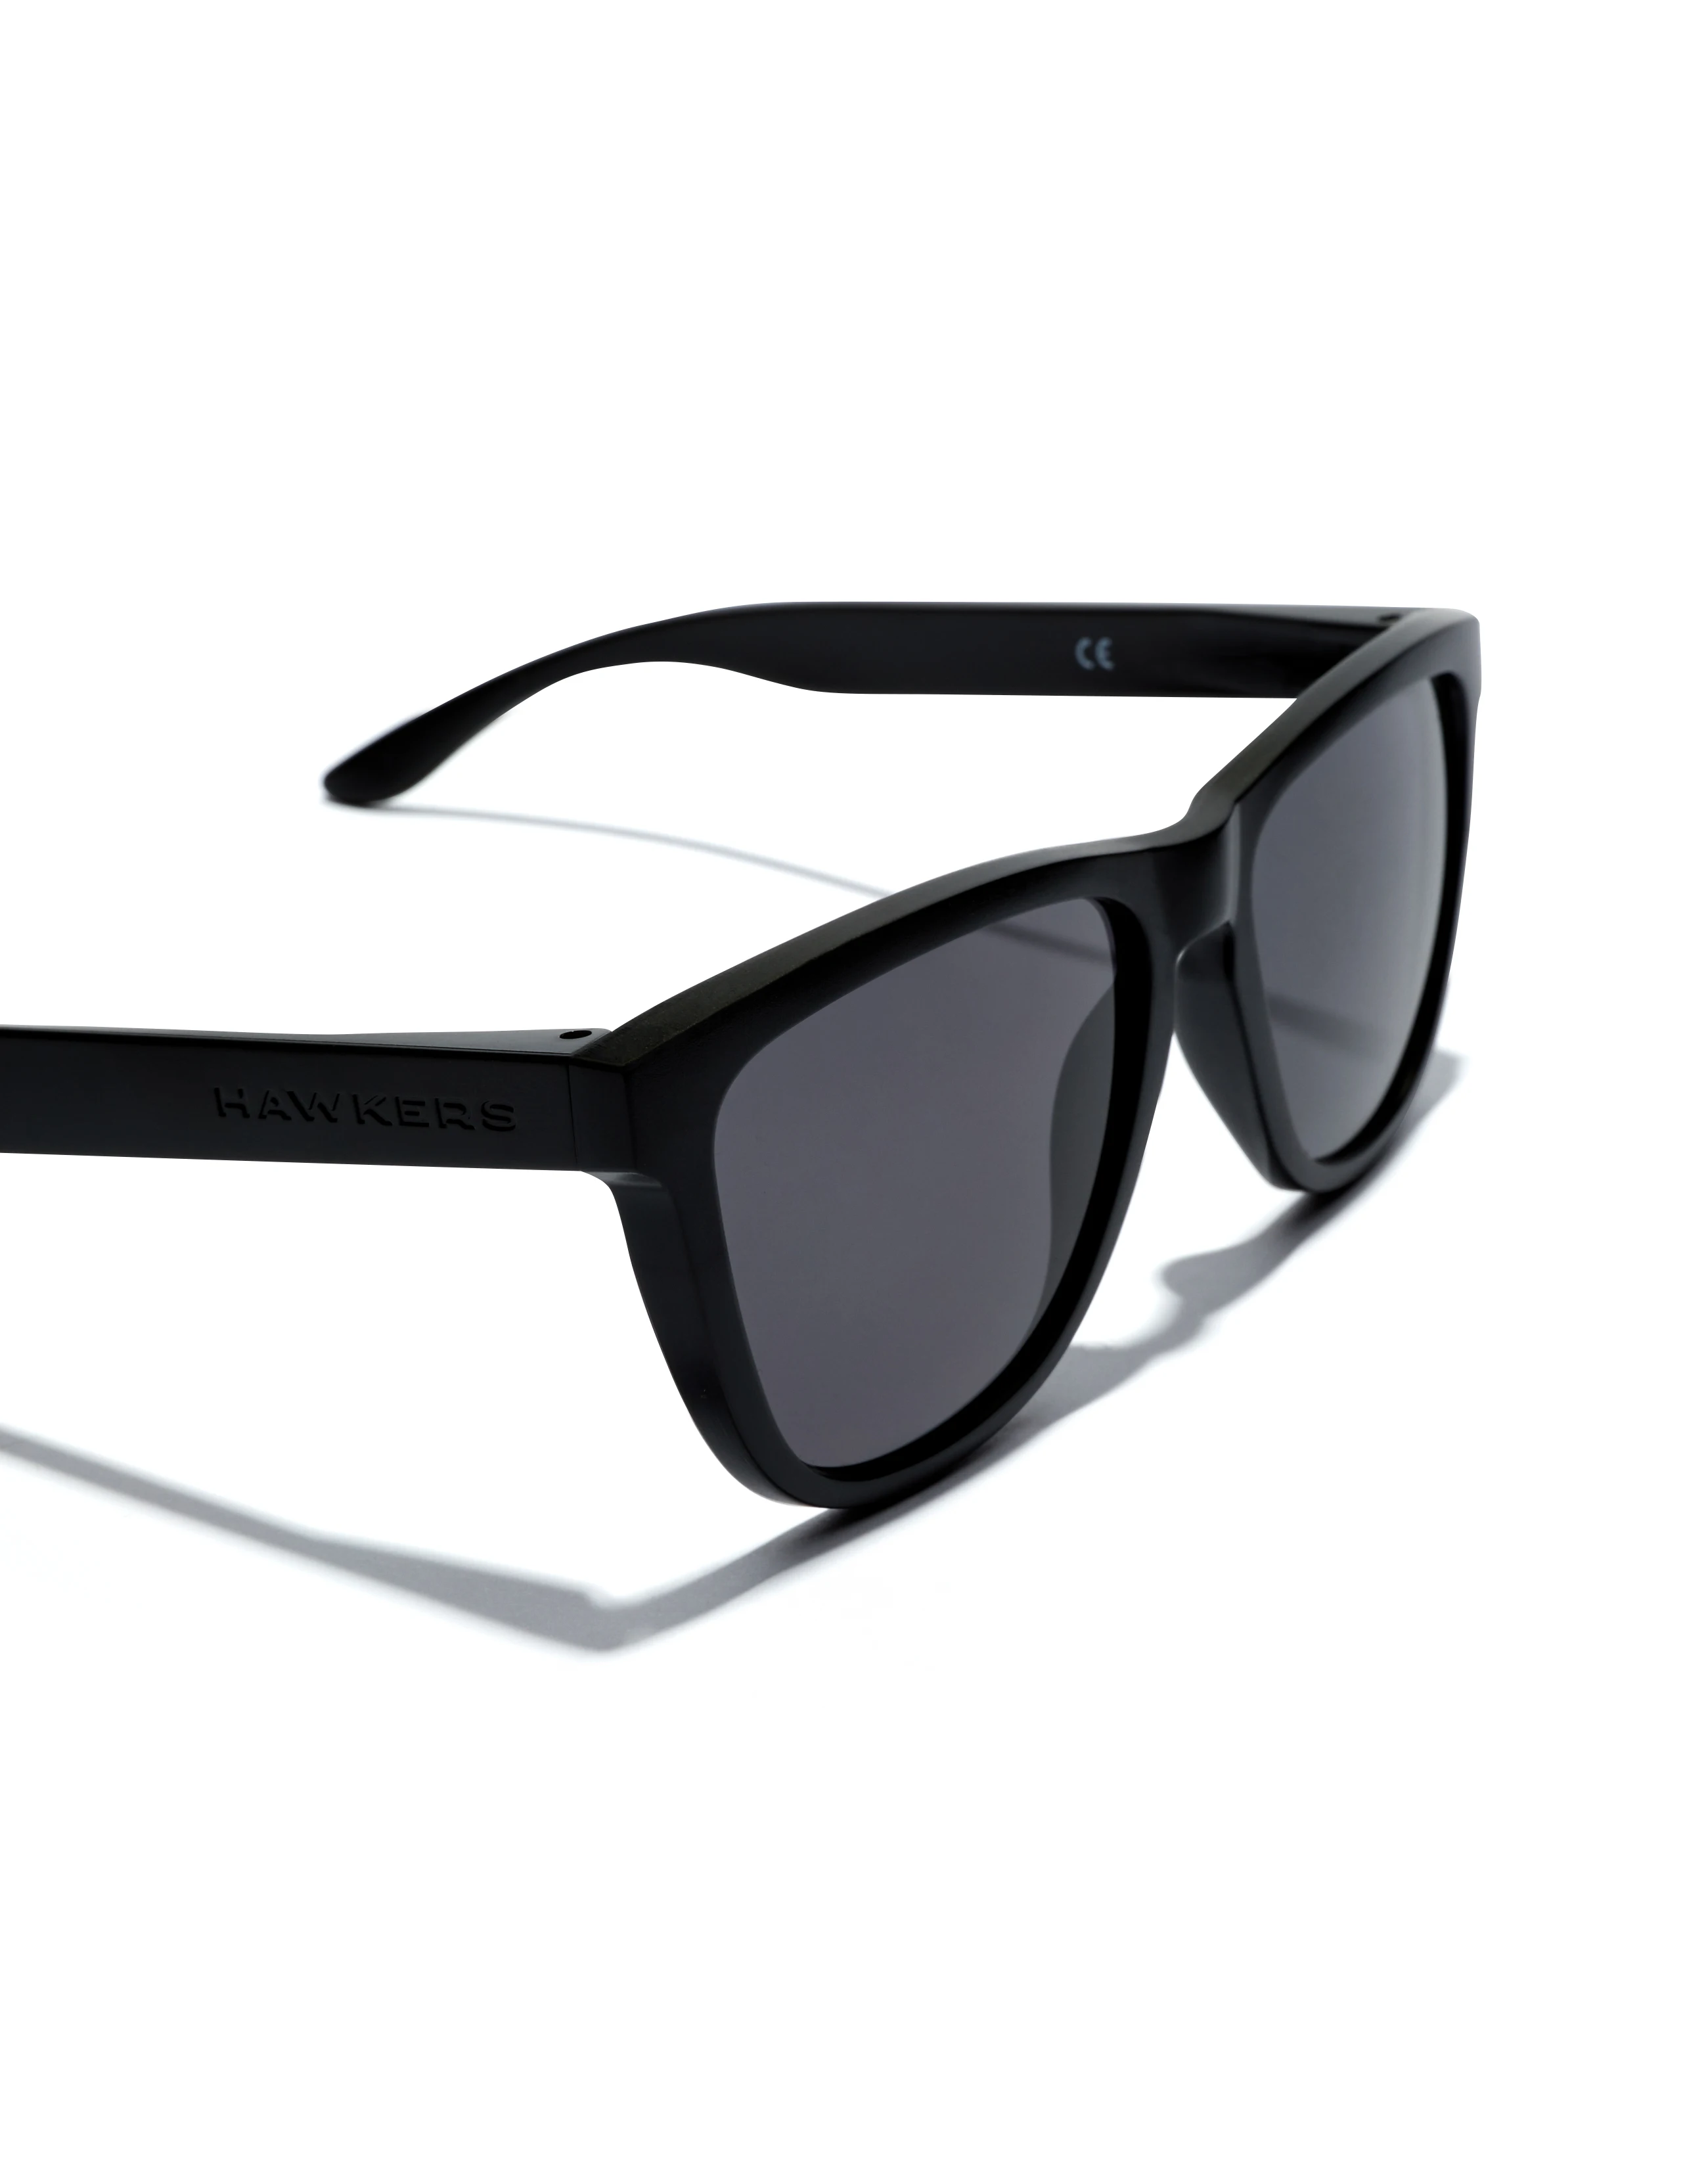 Ofertas en gafas de sol de hawkers para mujer - AliExpress